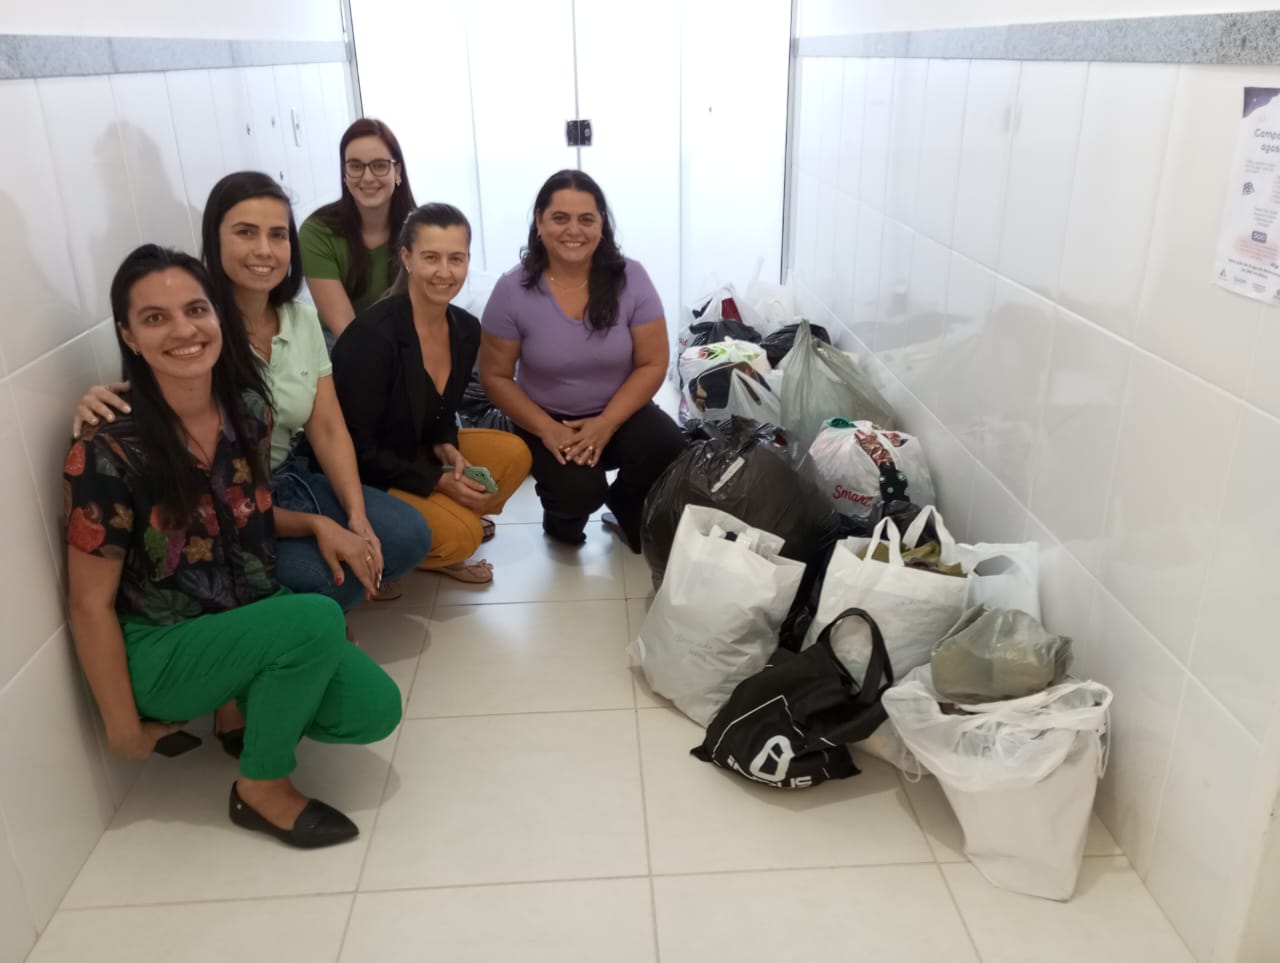 ESF “Ivo Oliosa”, em Quarteirão, realiza campanha do agasalho e faz doação para abrigo municipal, Cáritas e famílias carentes